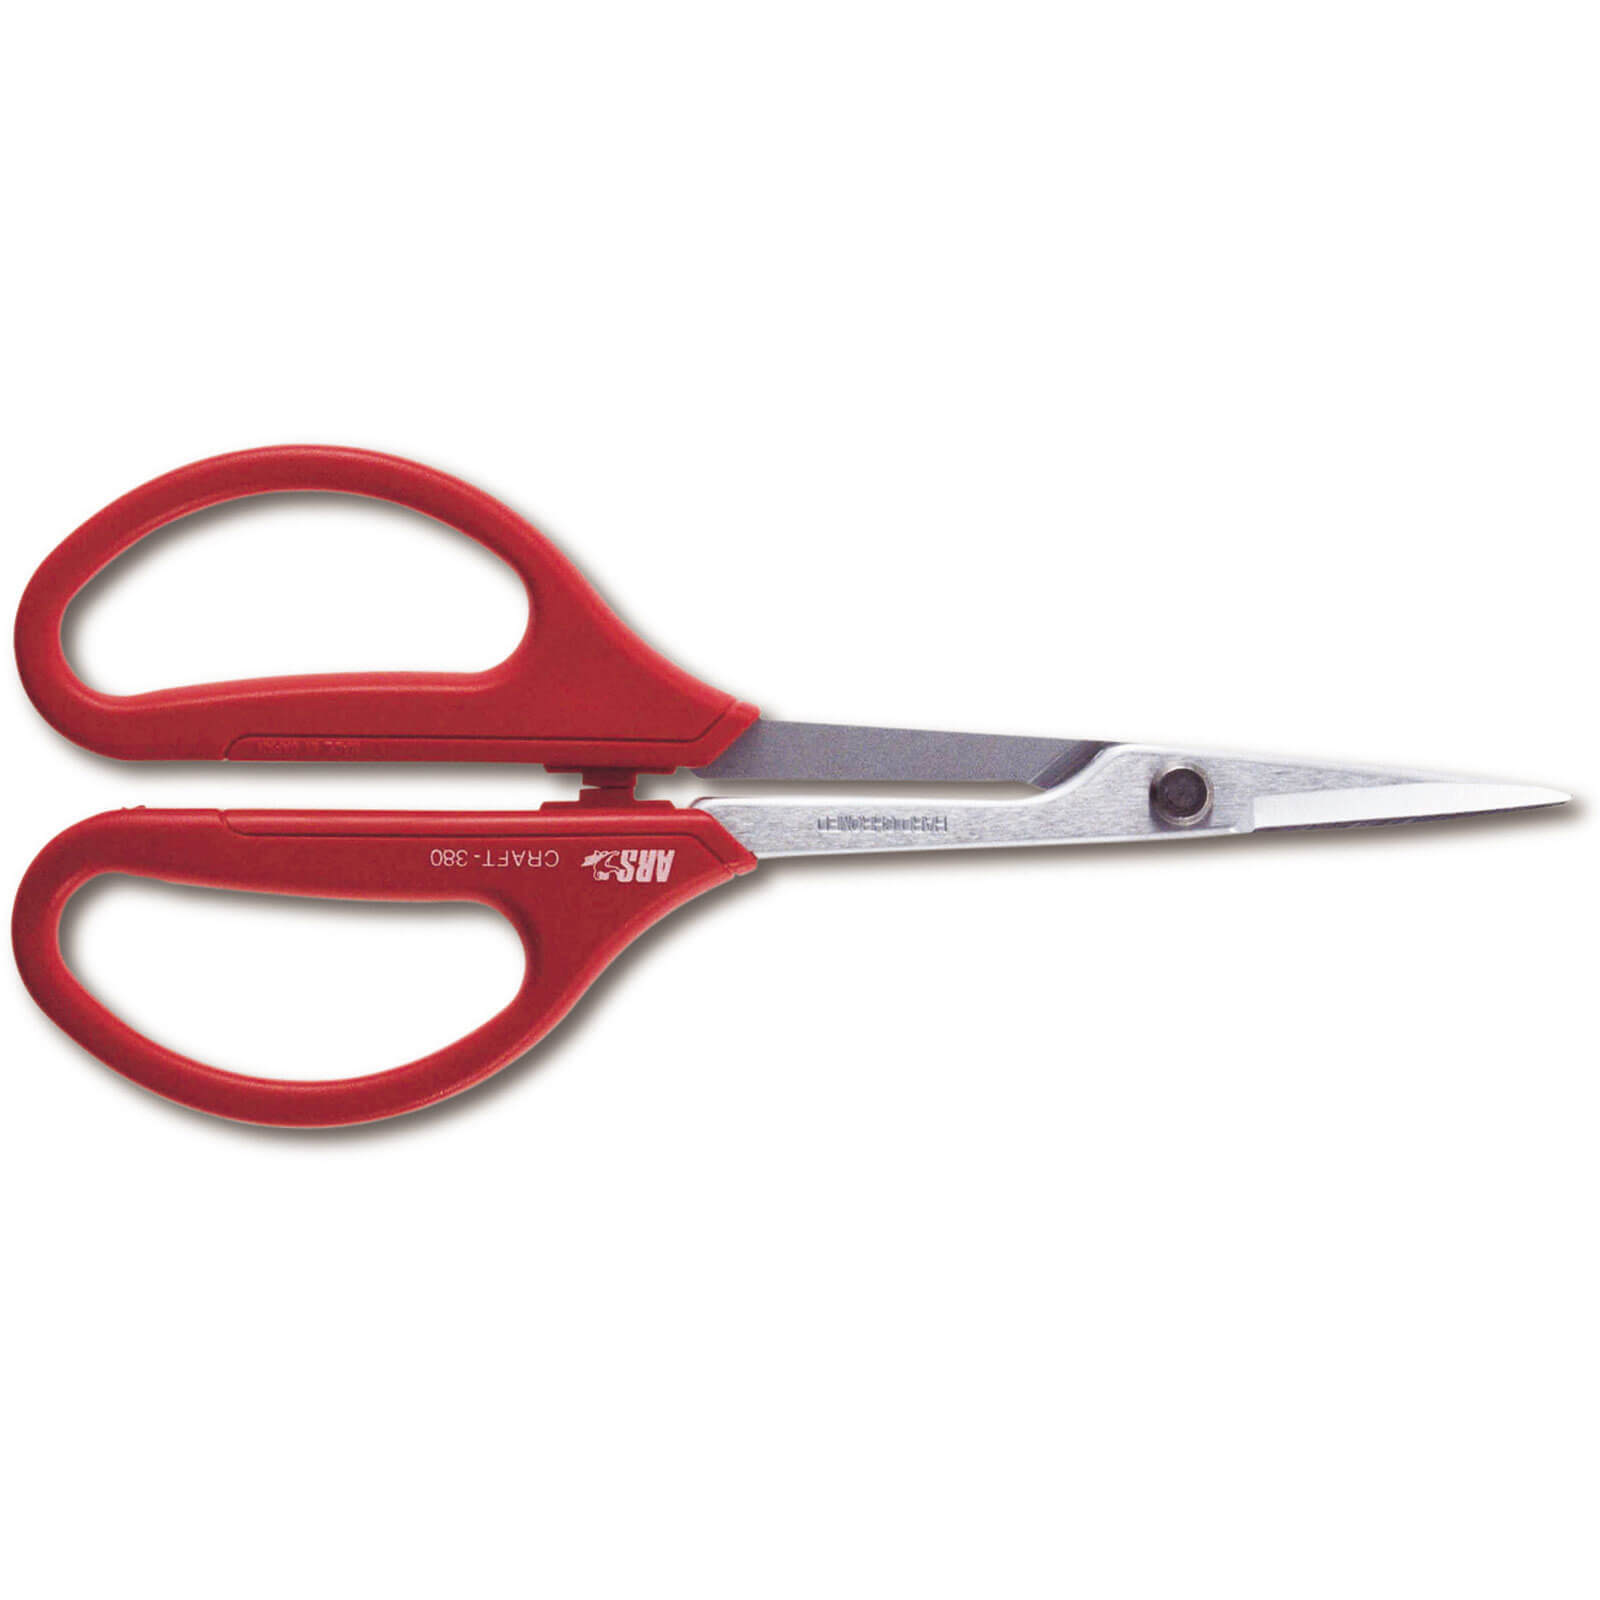 Image of ARS 380 Craft Scissors